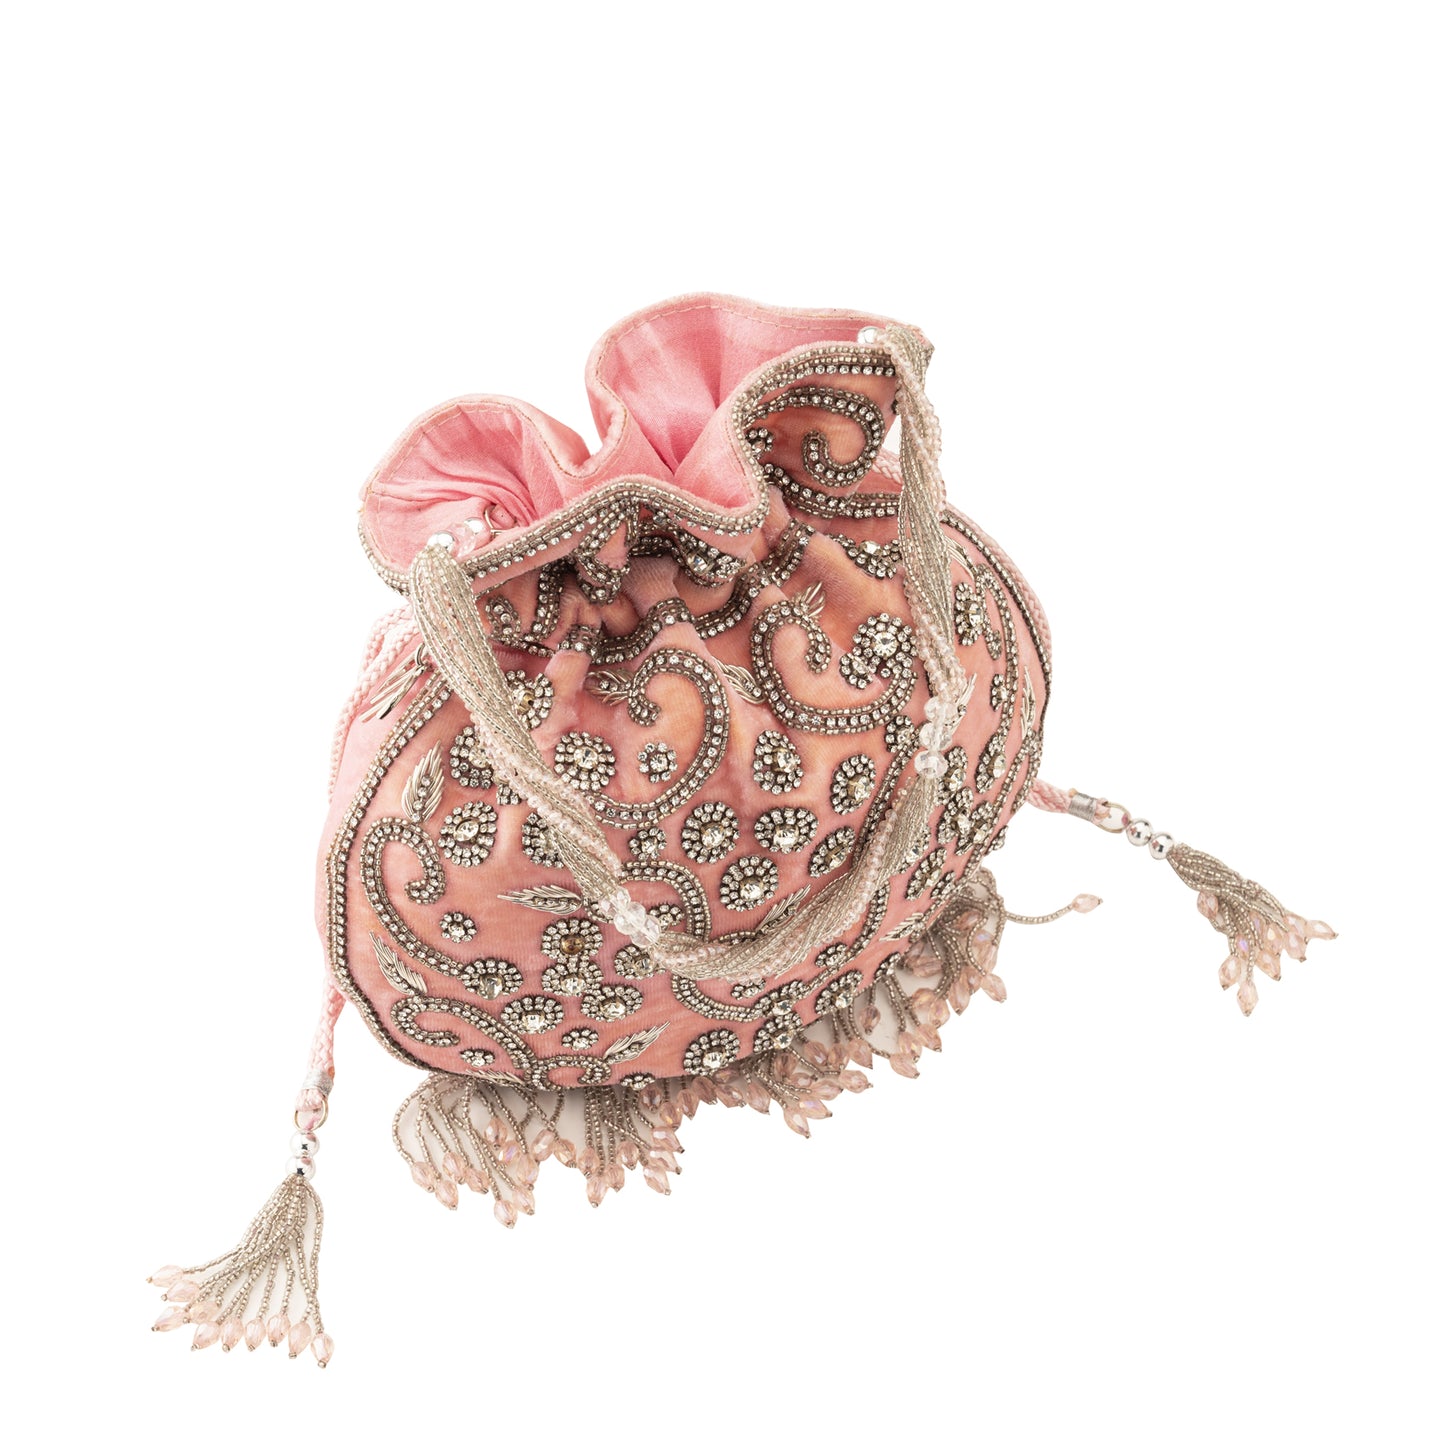 Ava embellished Pink potli bag